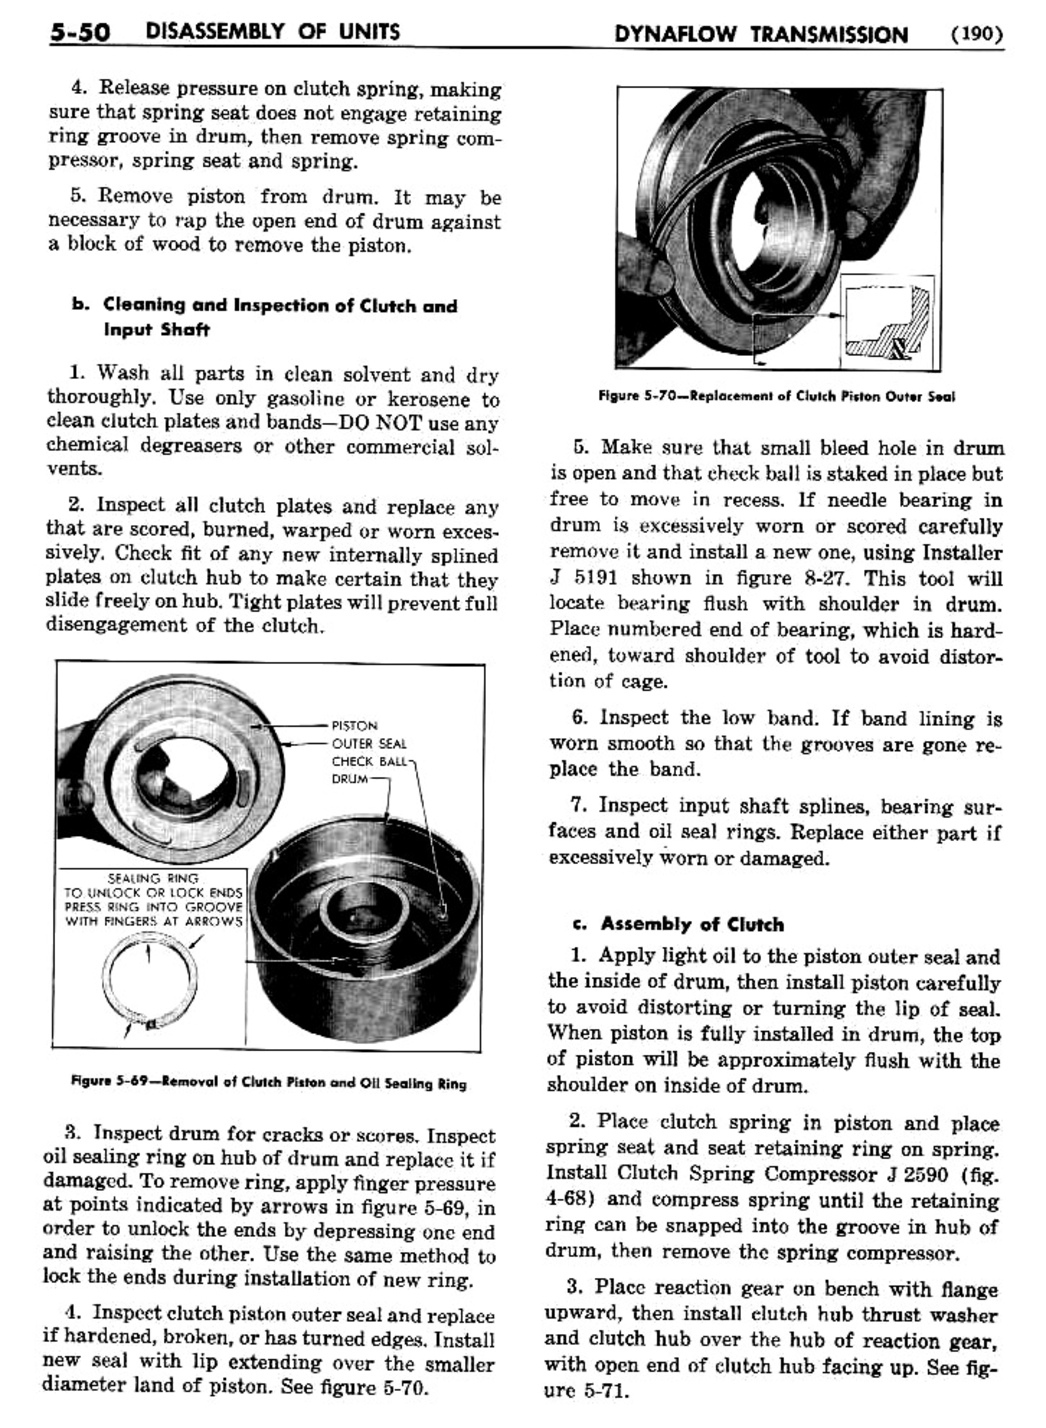 n_06 1955 Buick Shop Manual - Dynaflow-050-050.jpg